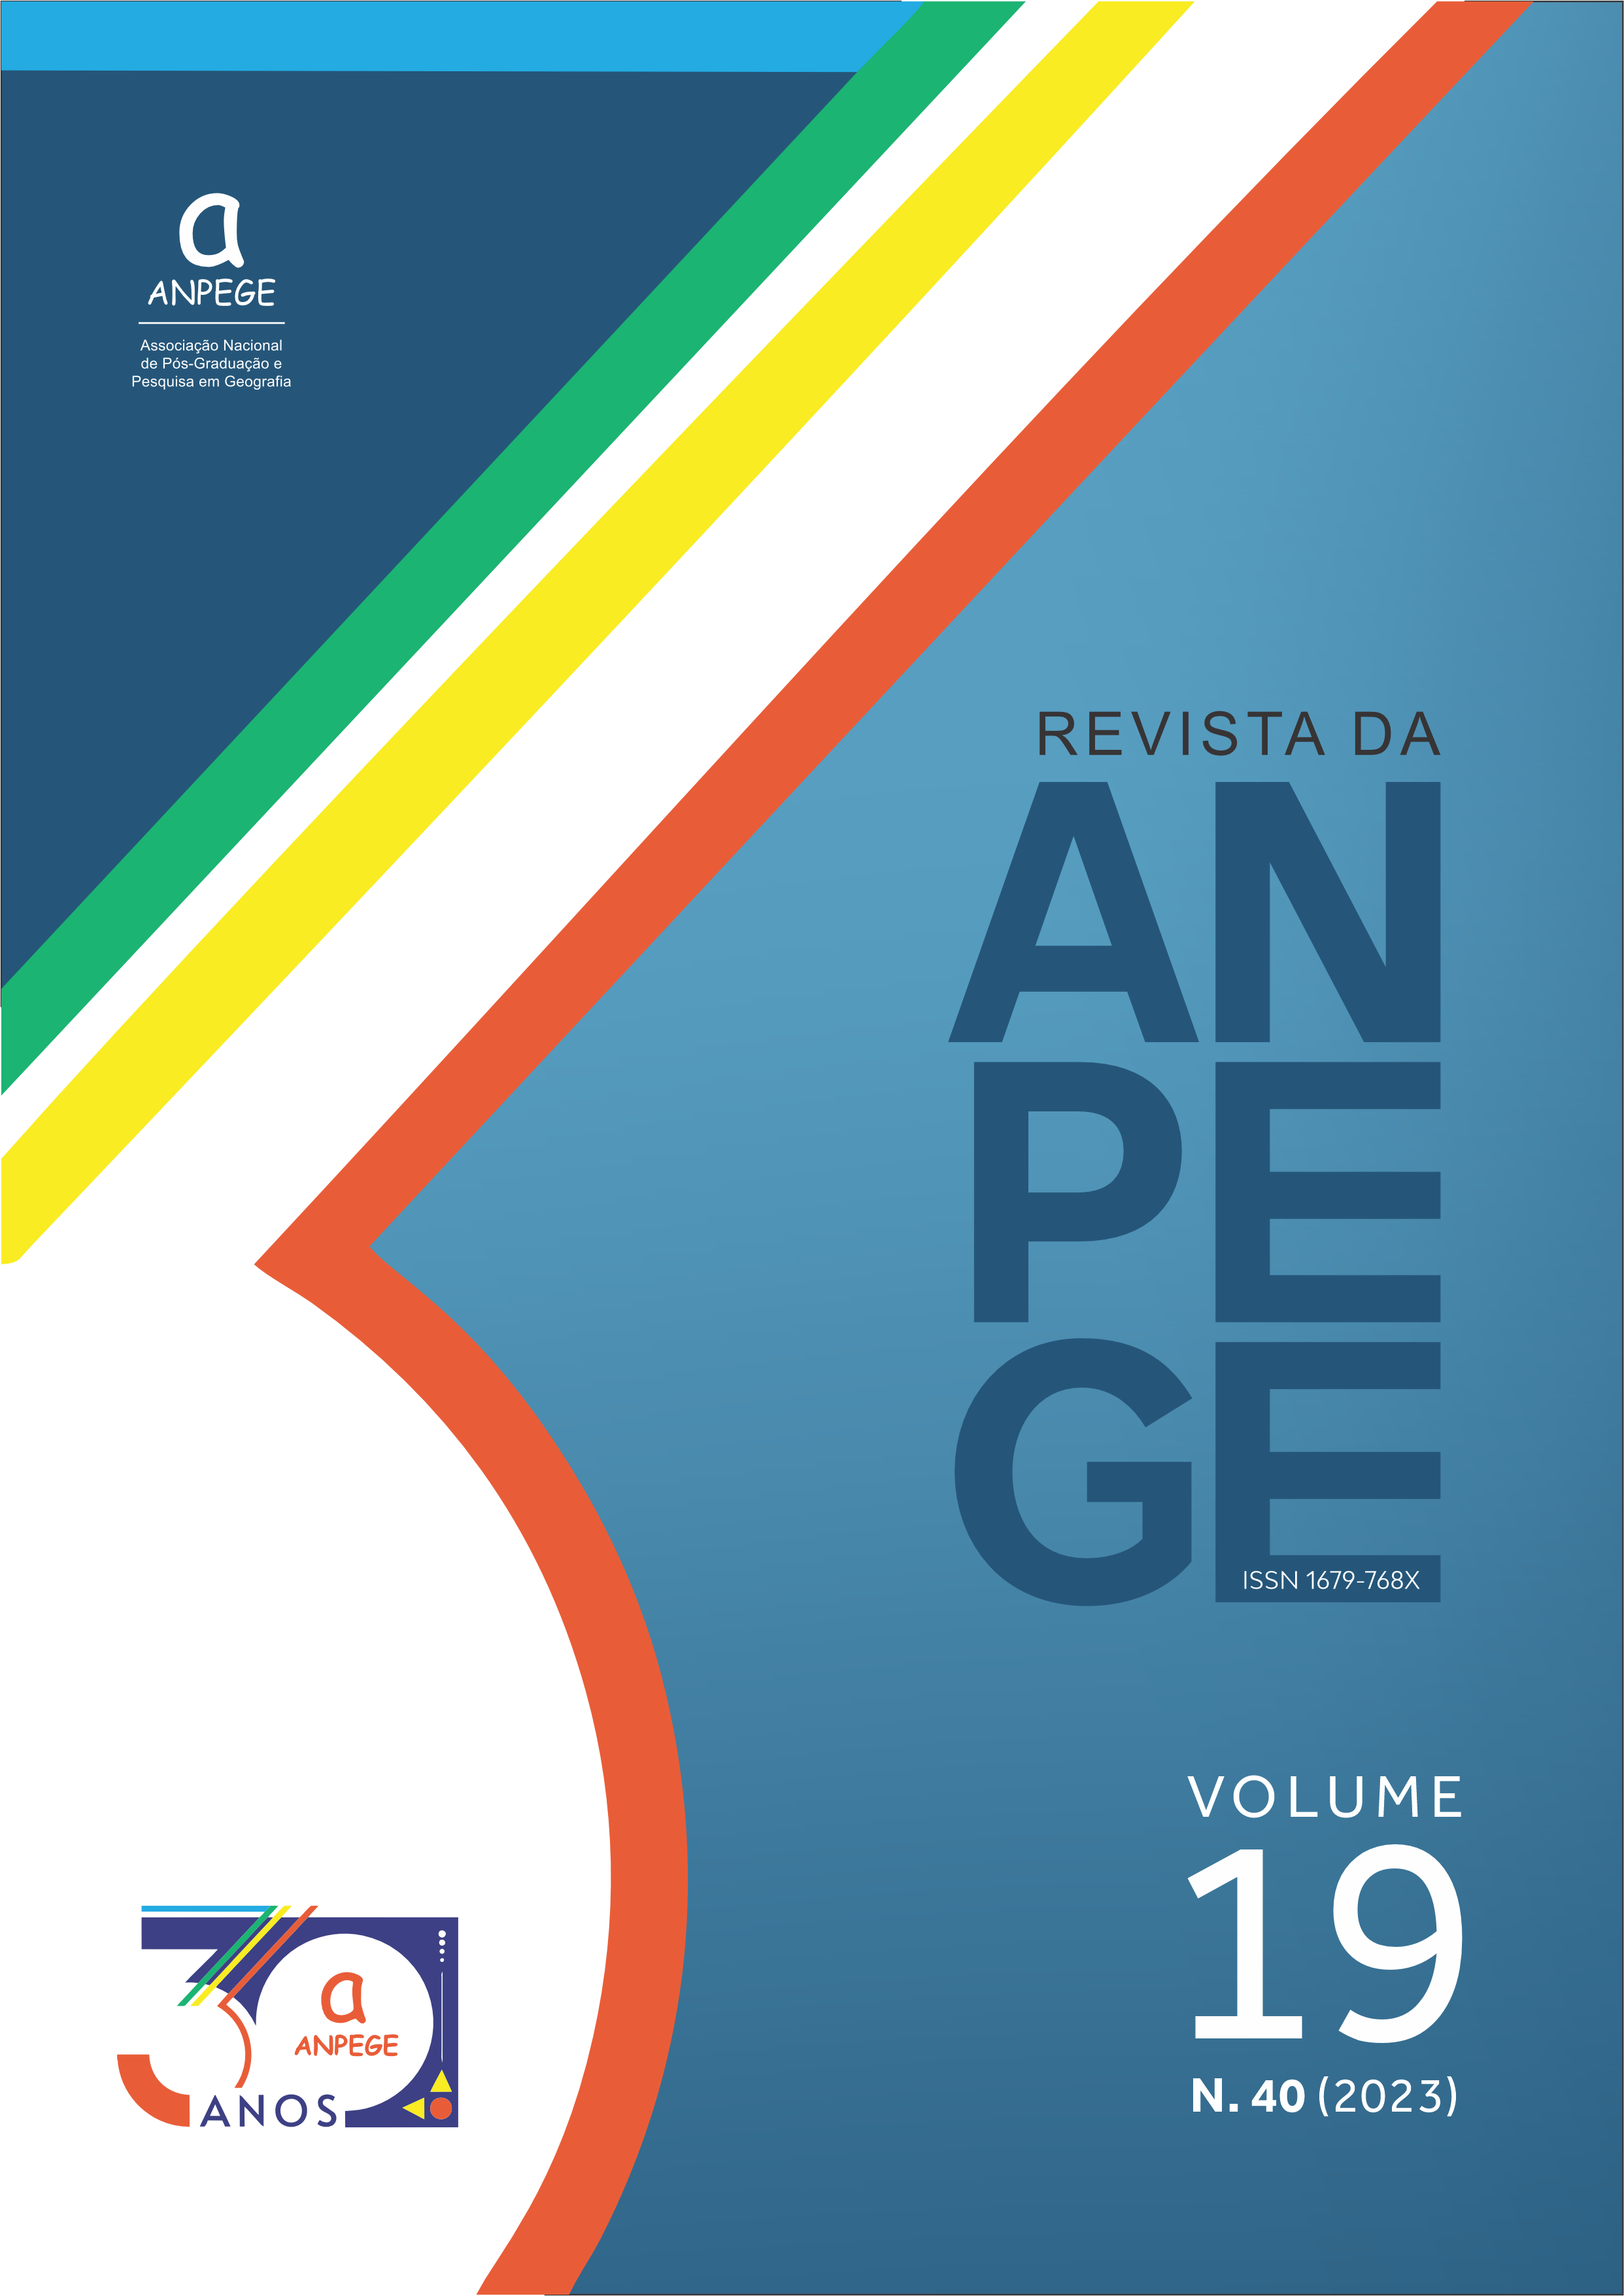 					Afficher Vol. 19 No 40 (2023): Revista da ANPEGE, Volume 19 Número 40
				